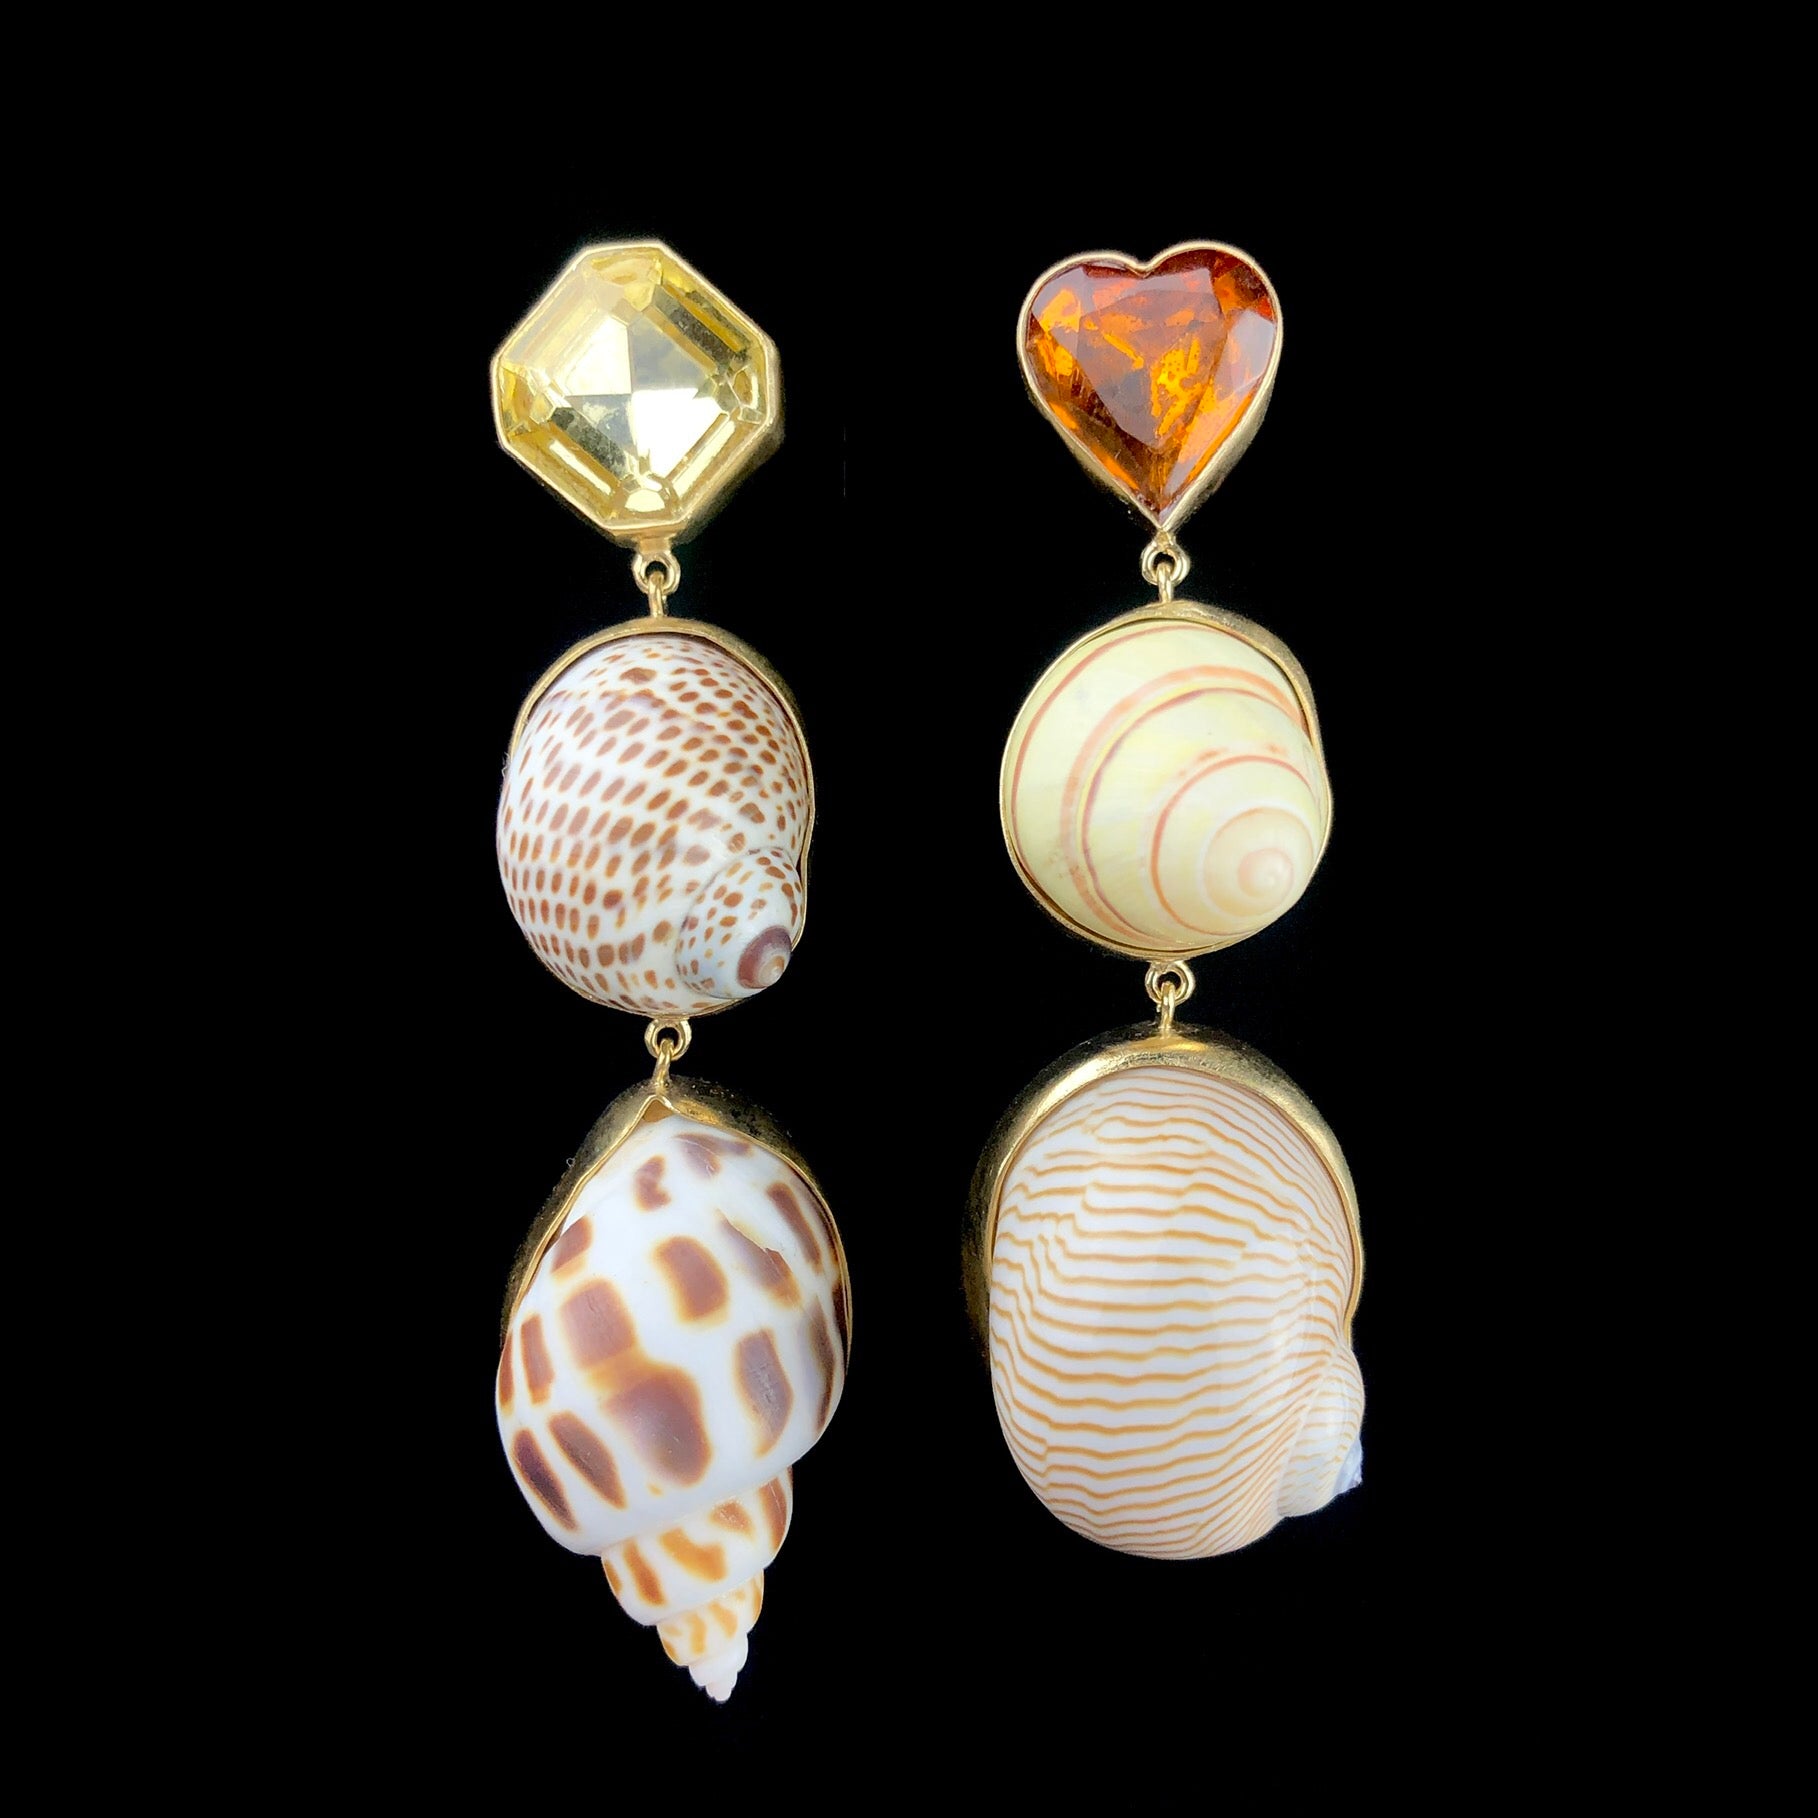 Shell Charm Drop Stud Earrings shown side by side